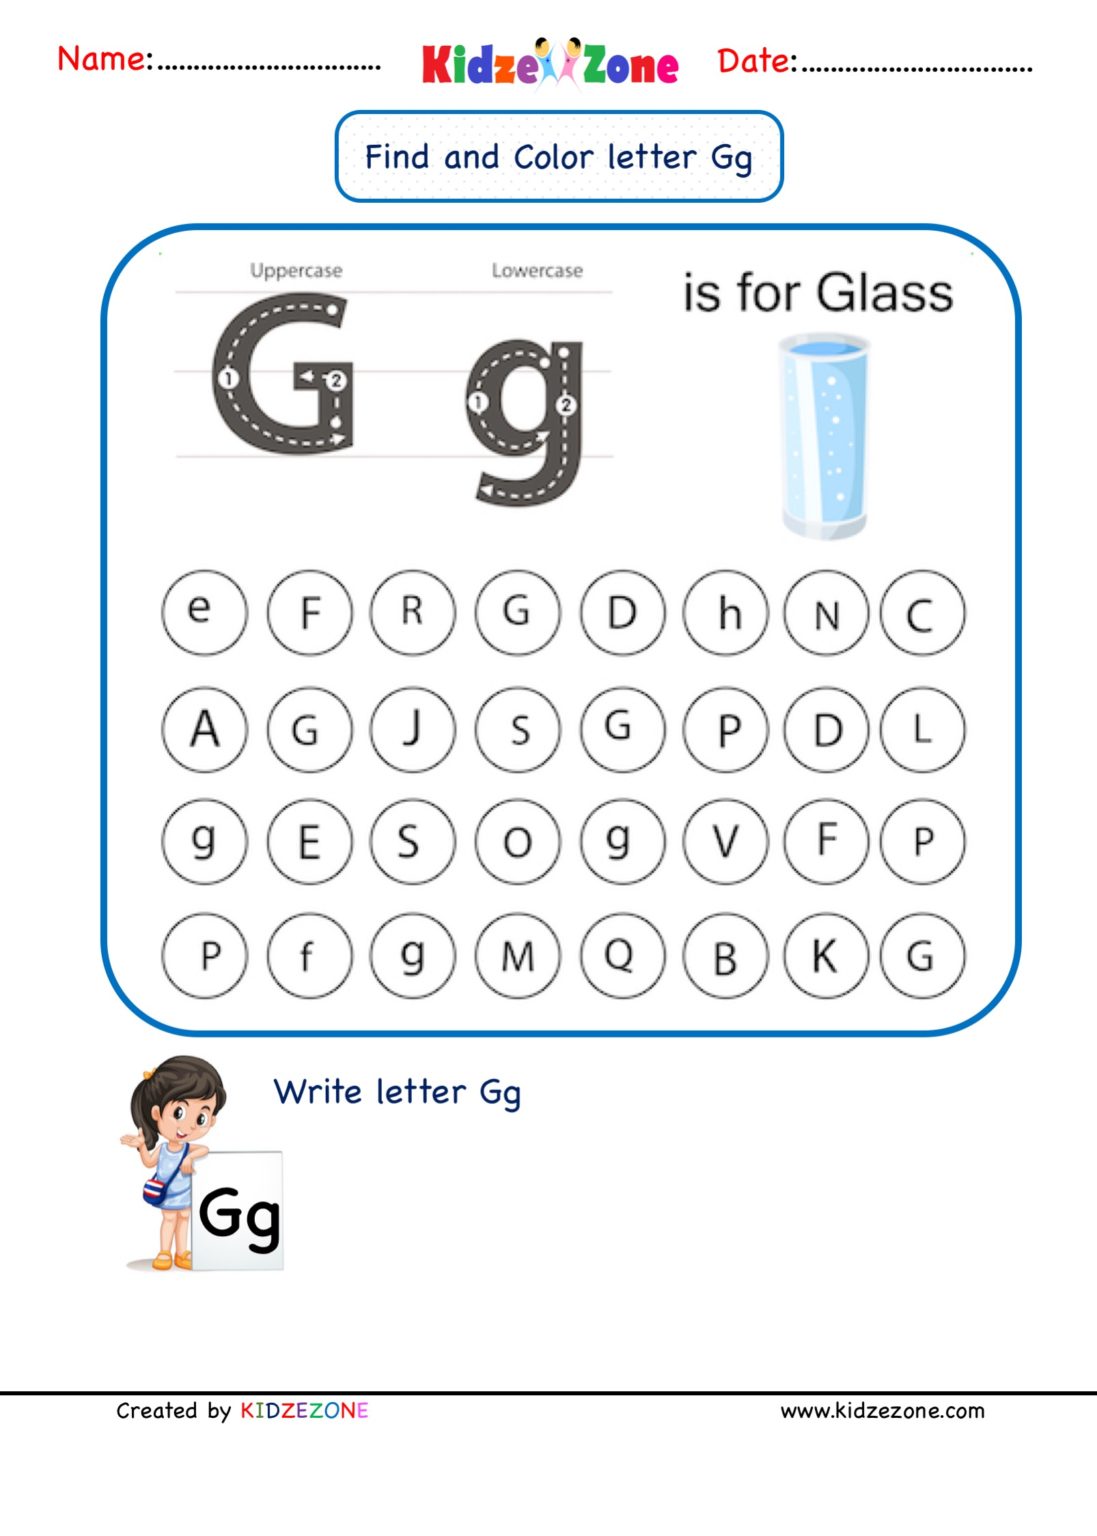 kindergarten-letter-g-worksheets-find-and-color-kidzezone